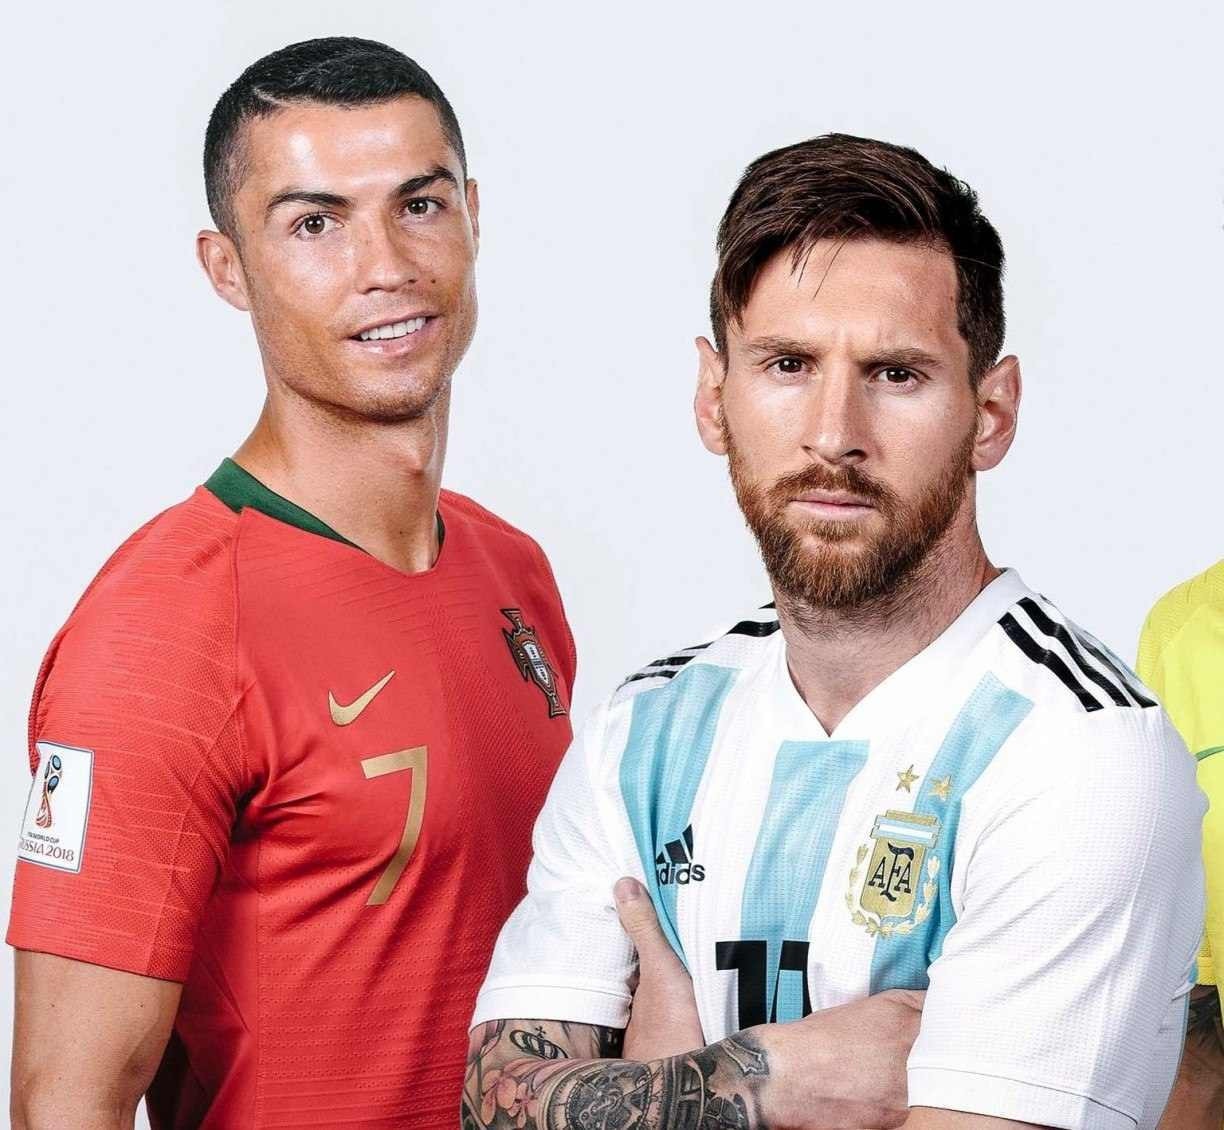 Não se surpreenda com quem é o 4º maior artilheiro do mundo, que está atrás  de Messi e CR7 - Fotos - R7 Futebol